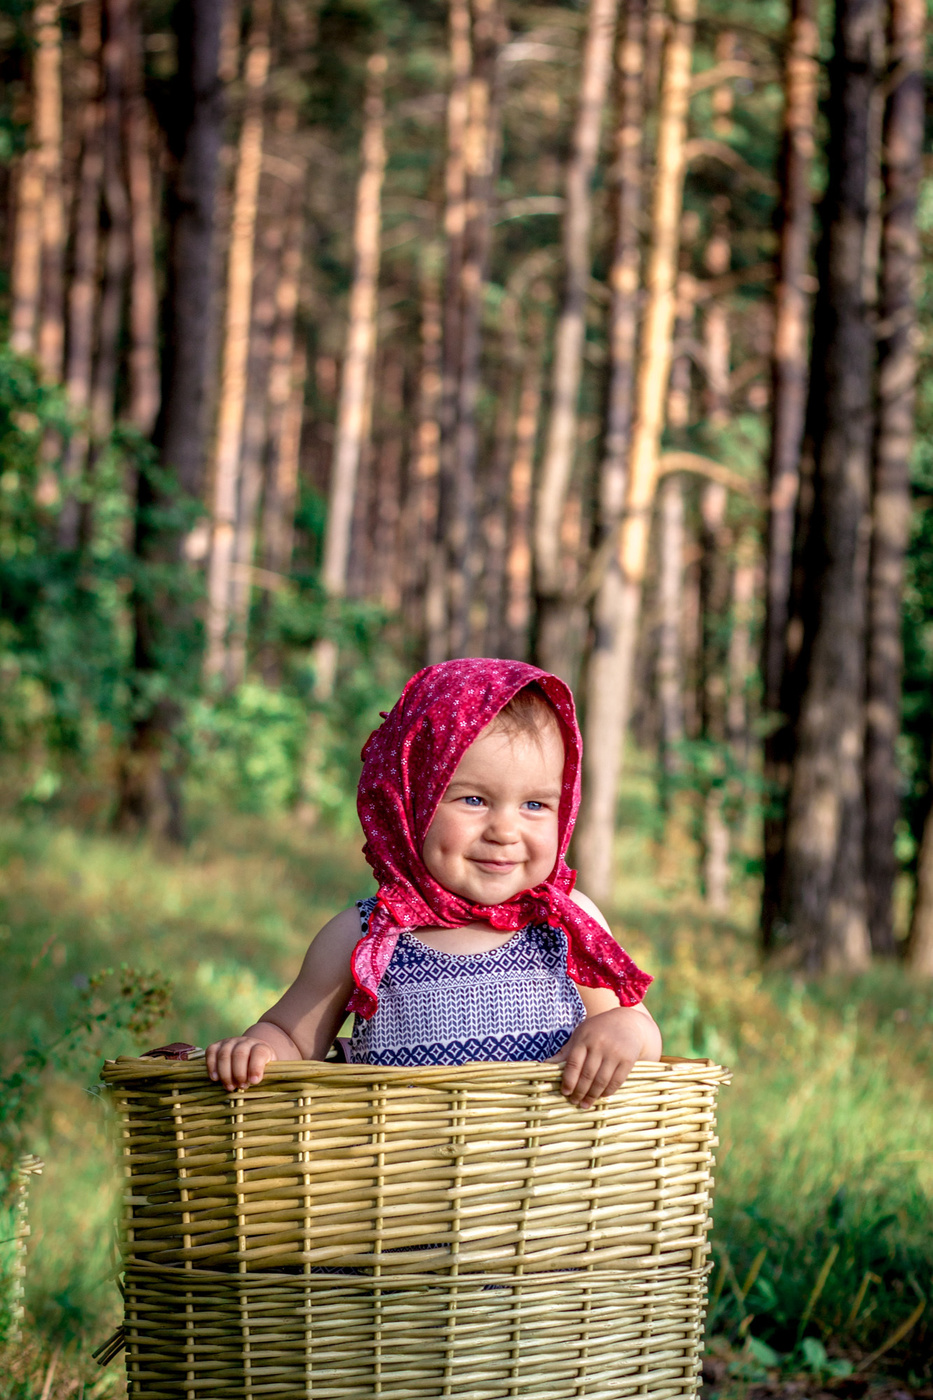 Картинка девочки маши. Девушка с корзинкой. Девочка с корзиной. Дети с корзинками в лесу. Фотосессия в лесу с корзиной.